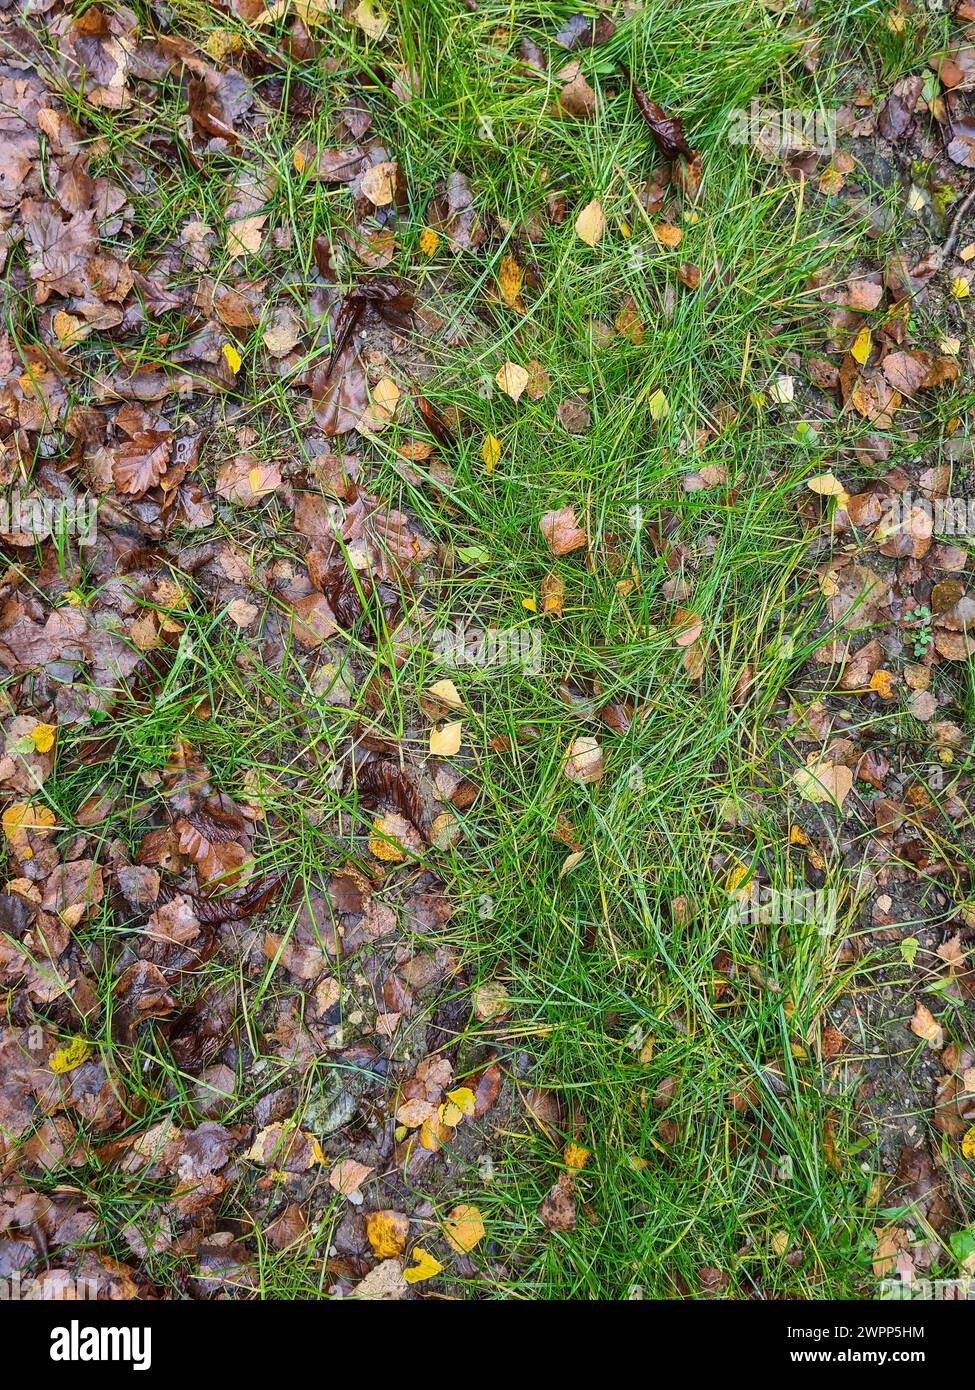 Varie foglie marroni cadenti giacciono bagnate nell'erba dopo una doccia a pioggia e coprono il prato, pioggia caduta, Germania Foto Stock